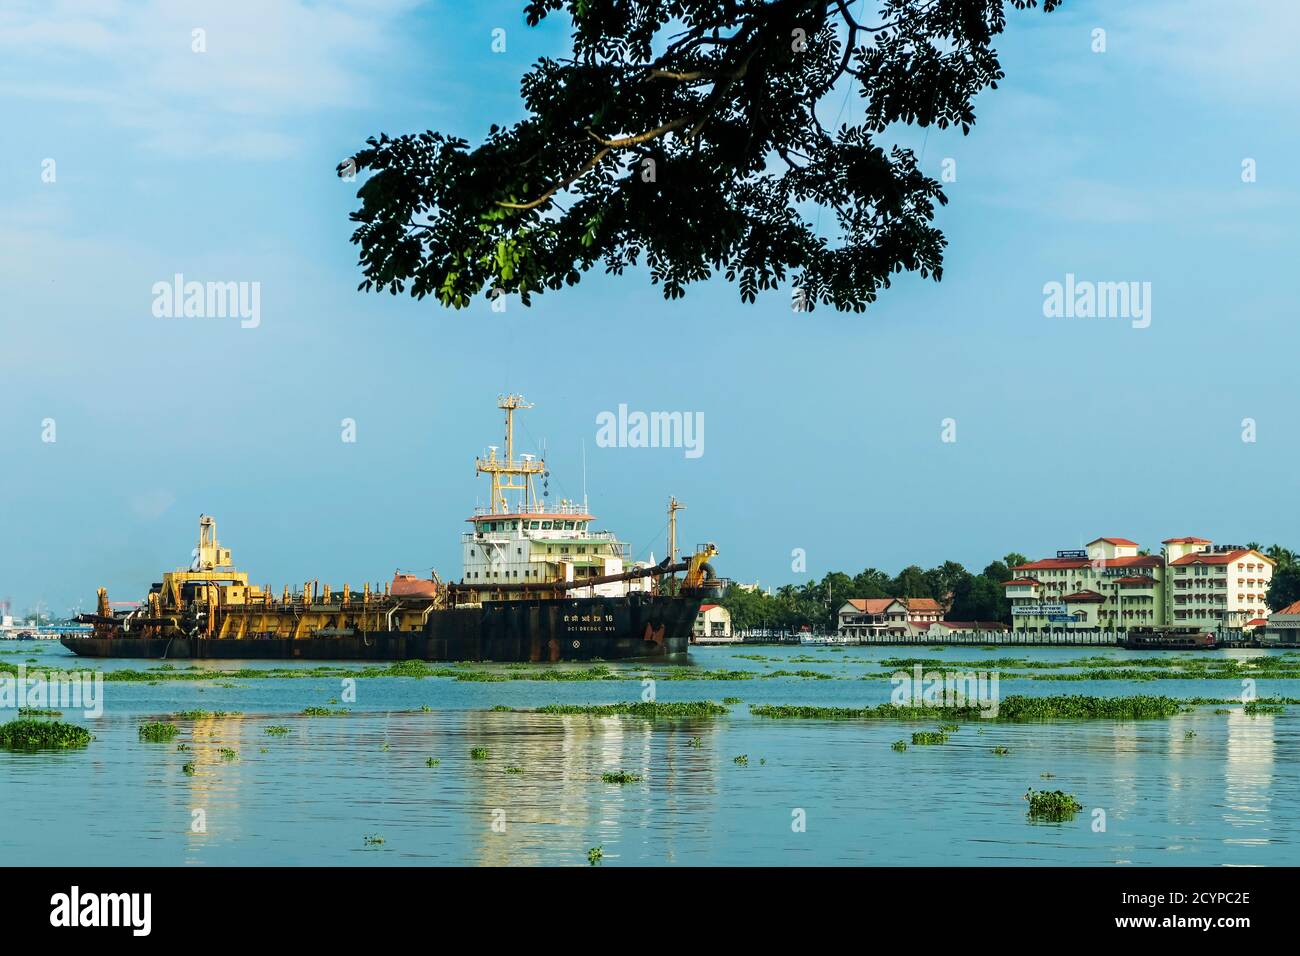 Baggerschiff auf See Vembanad passiert Fort Cochin Waterfront. Kochi ist ein wichtiger Hafen & Vallarpadam Terminal ist in der Nähe; Fort Cochin, Kochi, Kerala, Indien Stockfoto